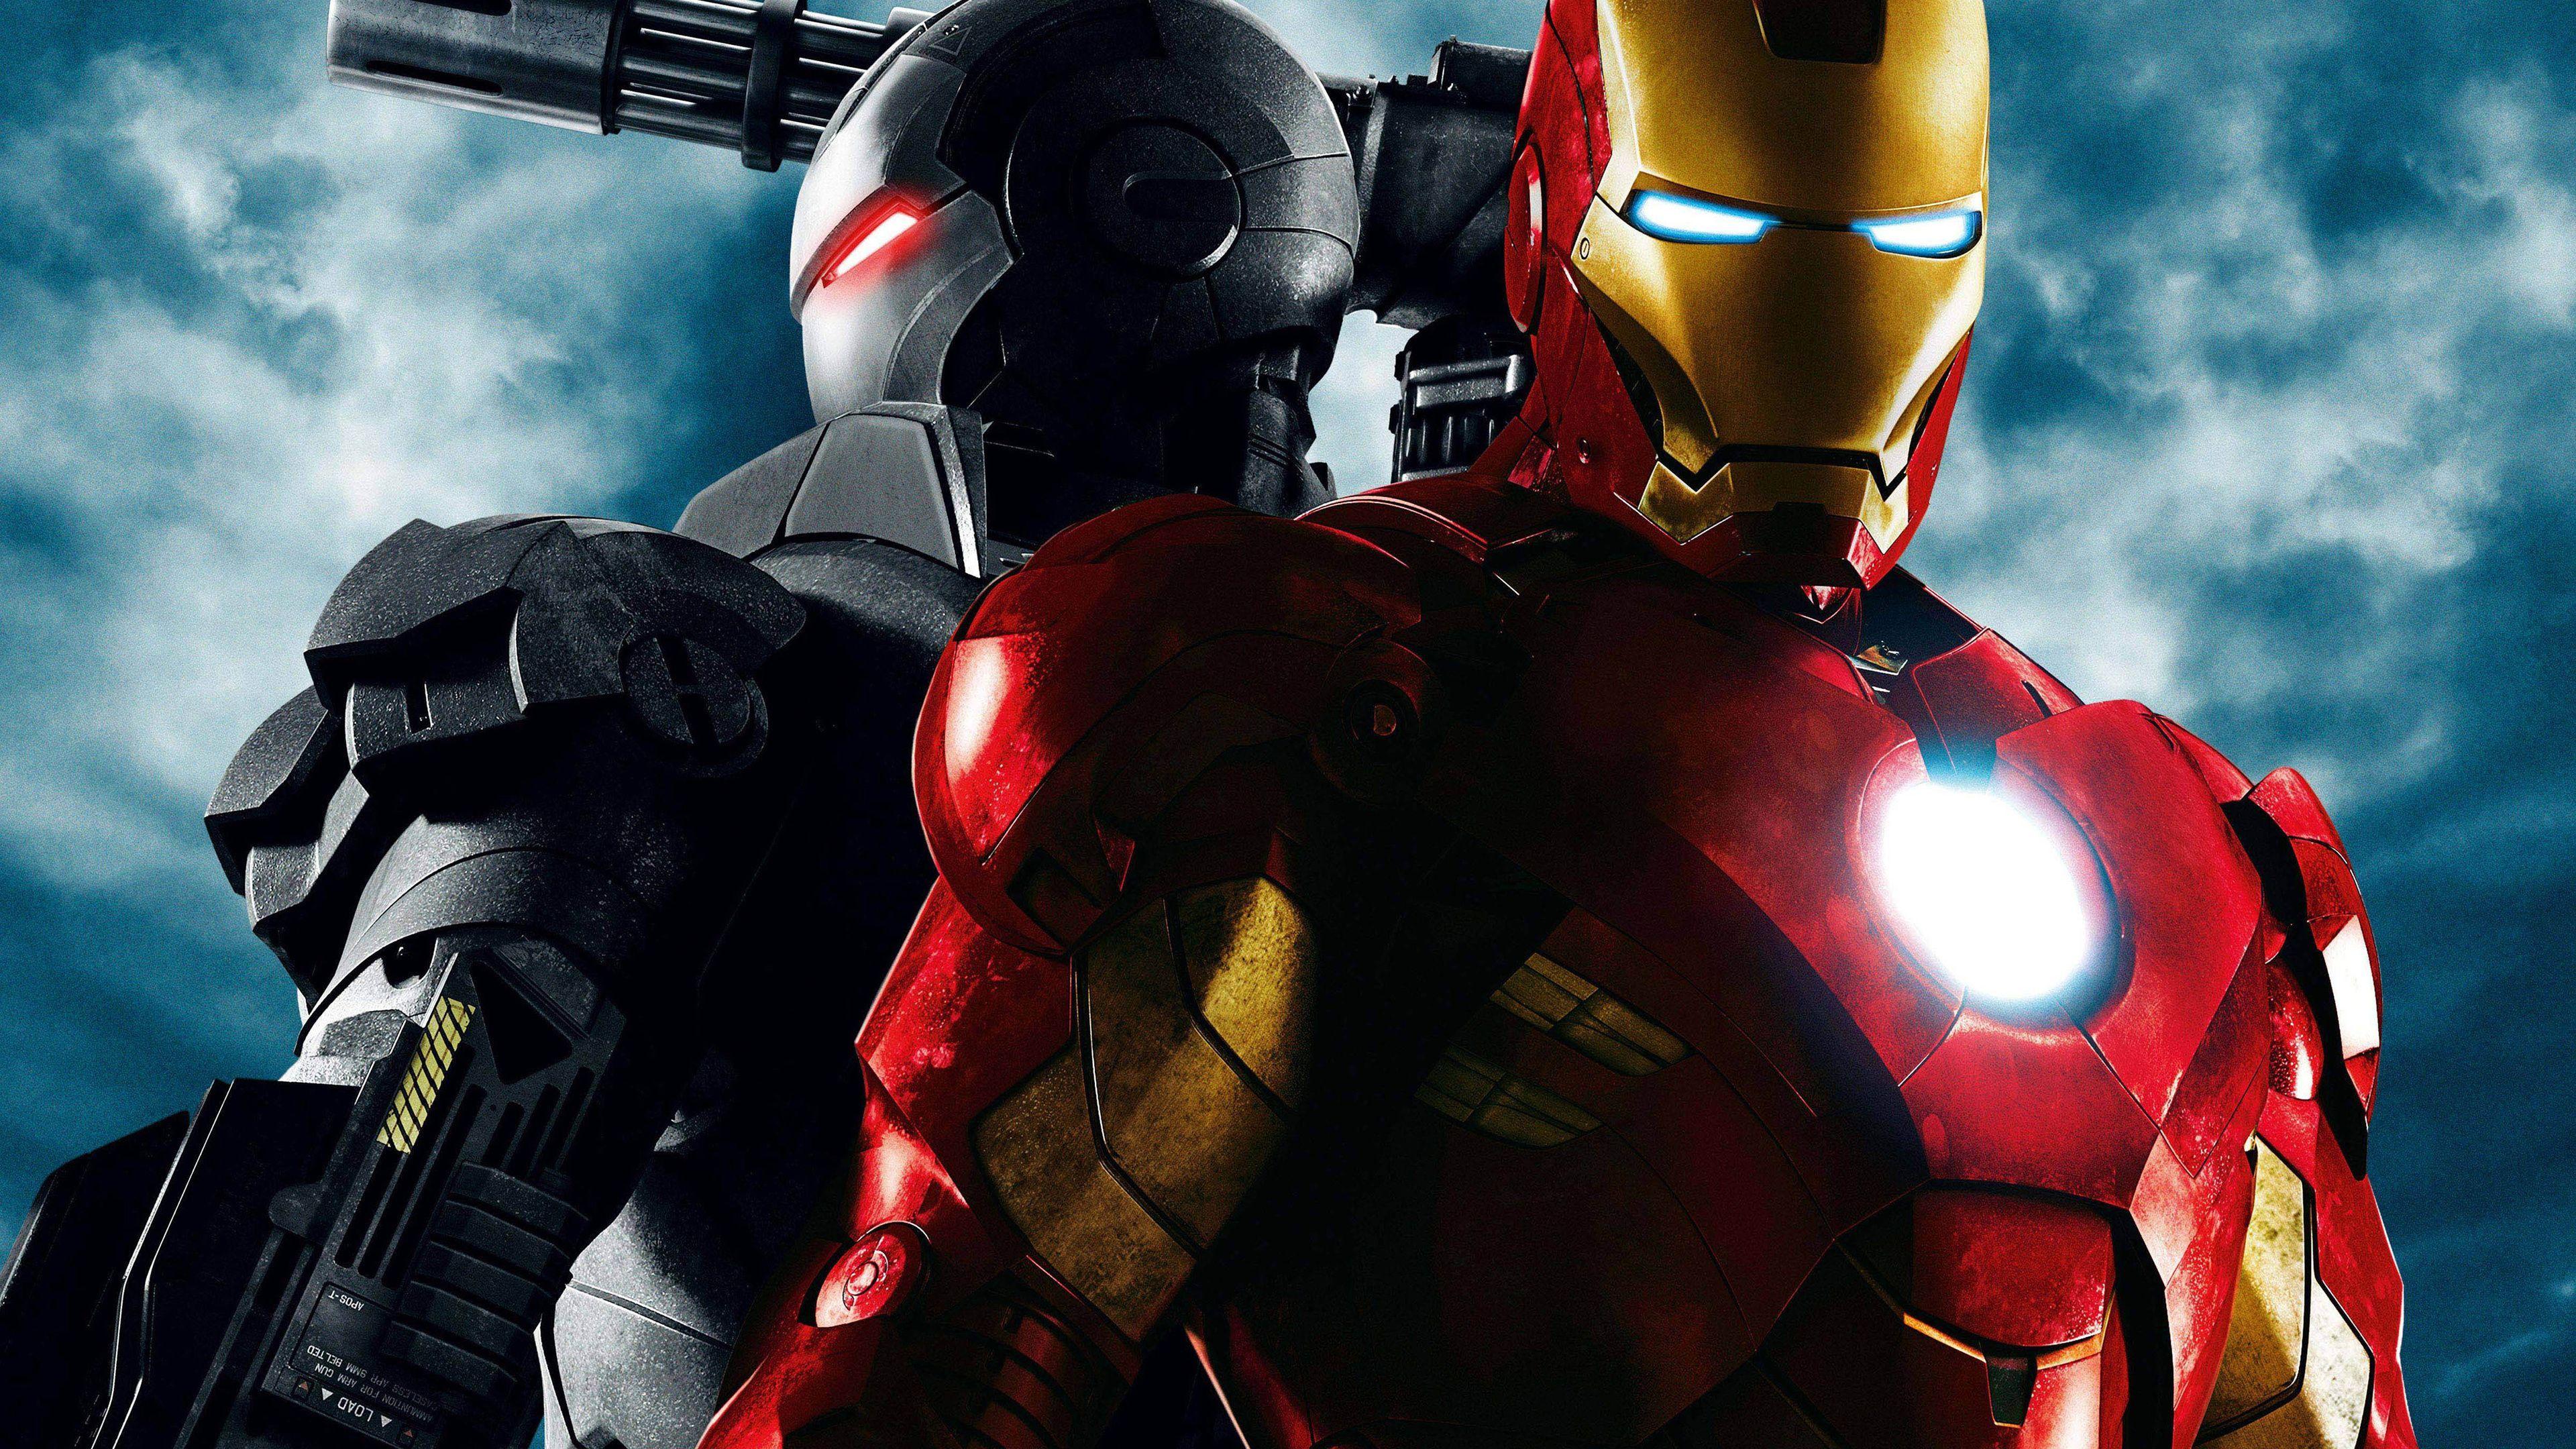 3840x2160 Hình nền siêu anh hùng 4k Iron Man 2, hình nền phim